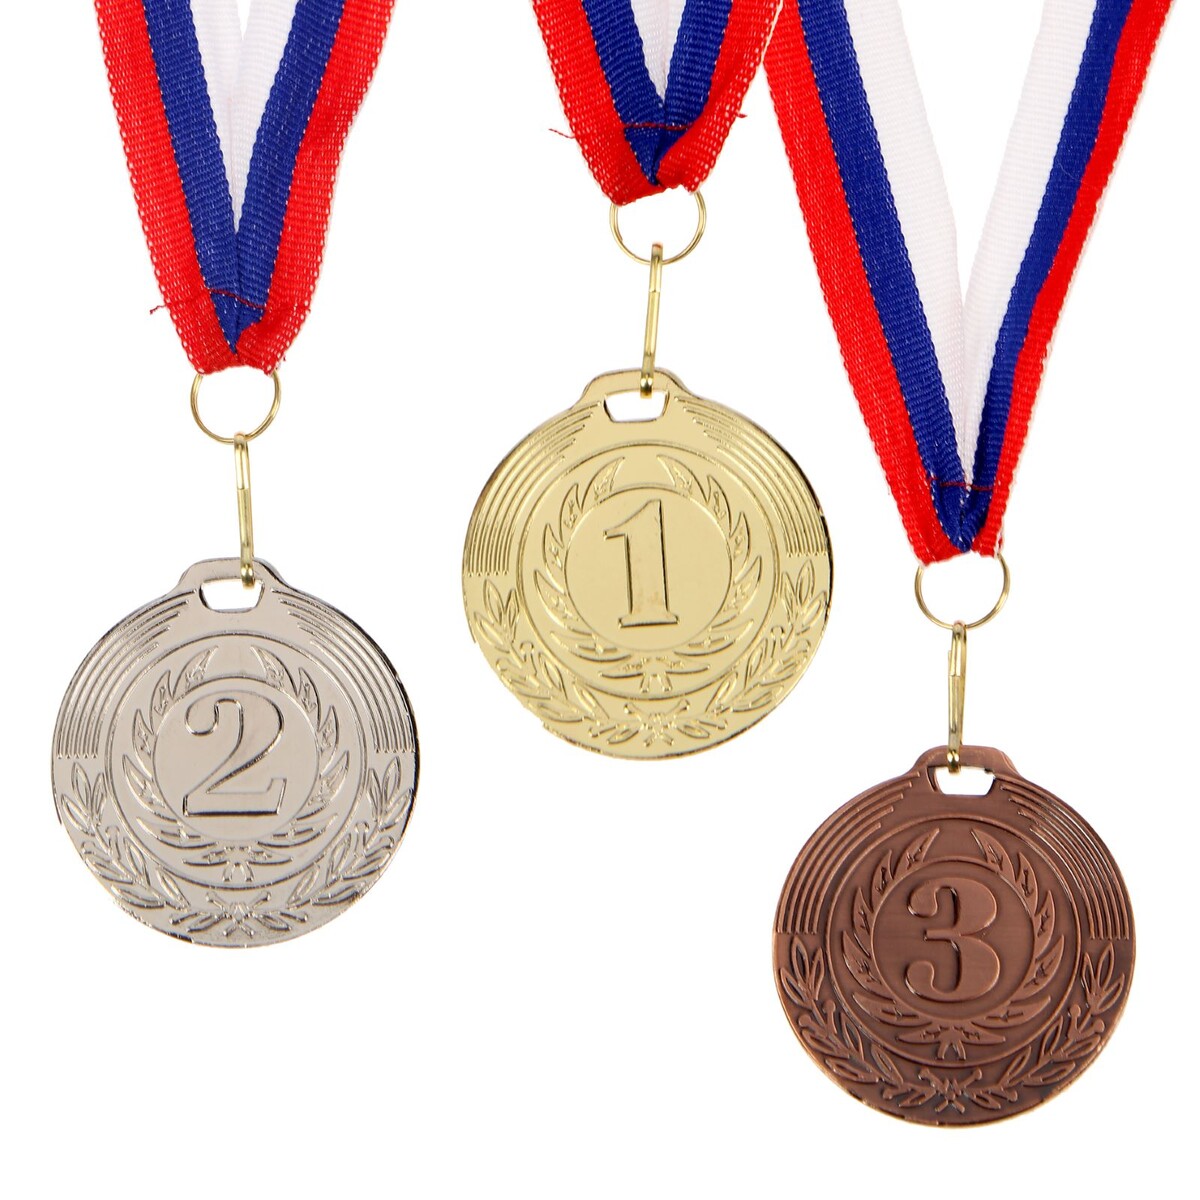 Медаль призовая 049 диам 5 см. 3 место. цвет бронз. с лентой медаль призовая 001 диам 5 см 3 место бронз с лентой